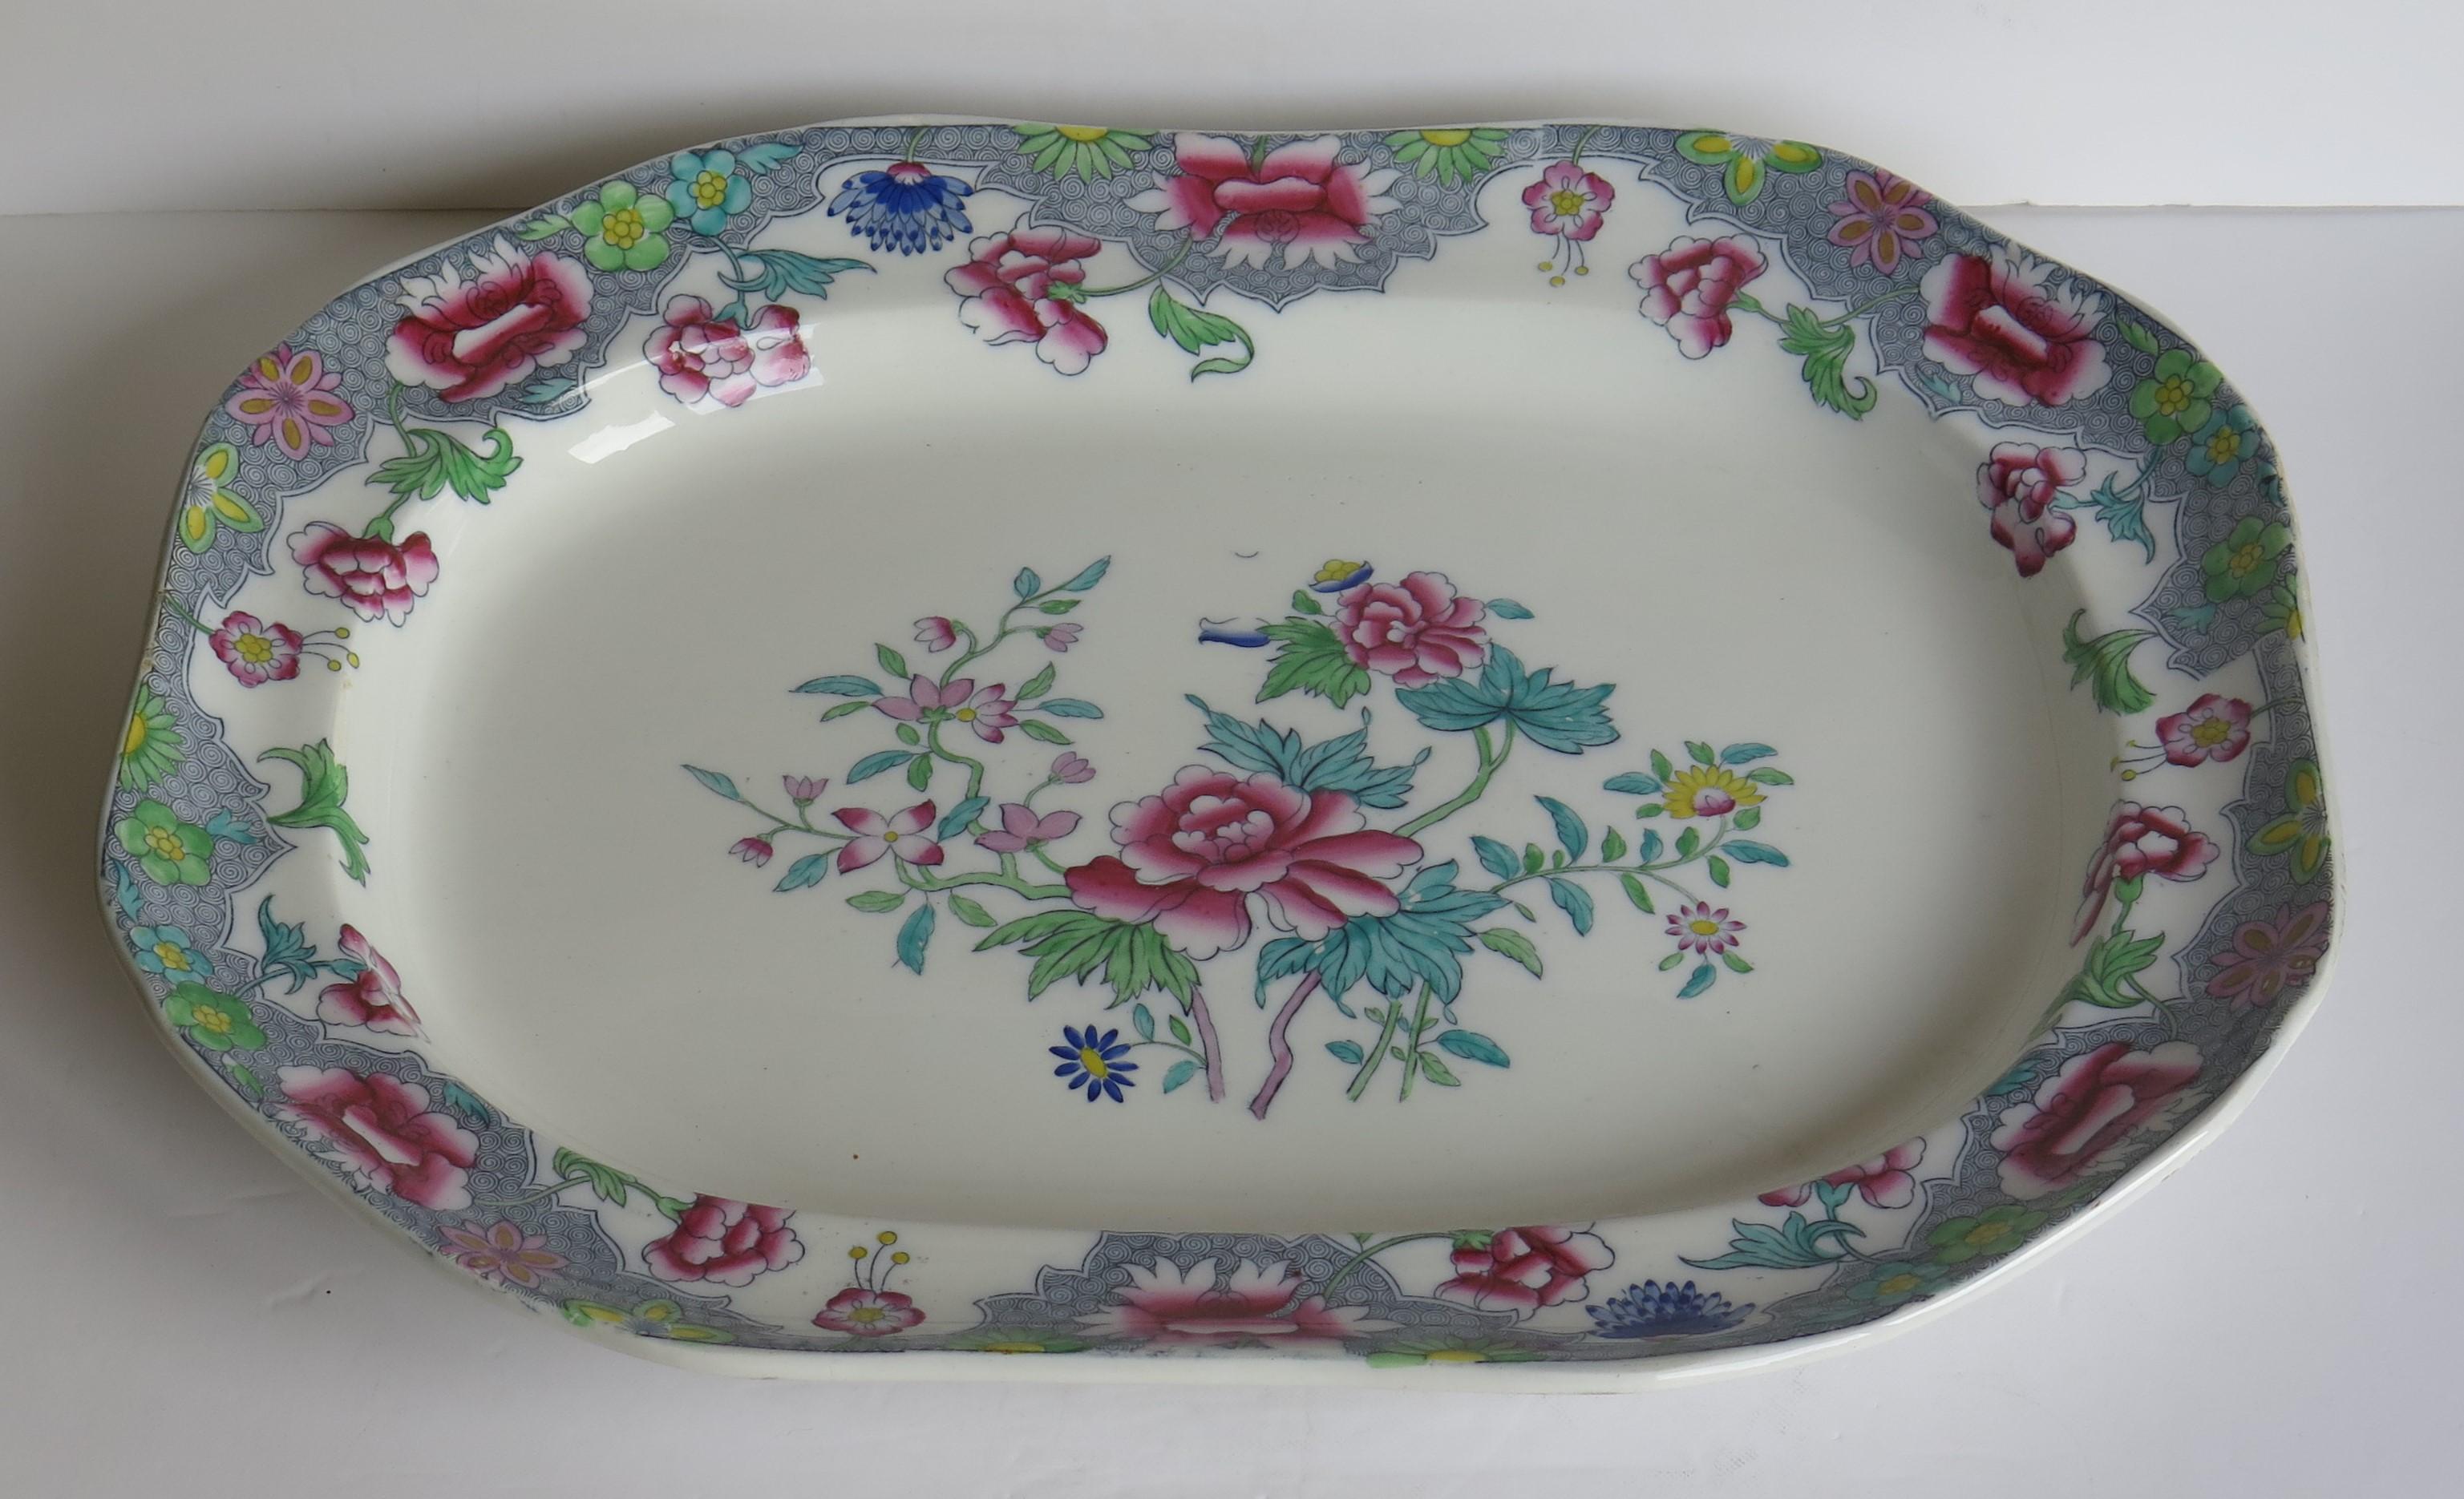 Il s'agit d'un beau grand plat ou assiette à viande par Copeland (anciennement Spode) dans un motif floral très décoratif No. 8036, Angleterre, datant d'environ 1850.

La pièce a la forme d'une grande assiette rectangulaire ou d'un plateau avec